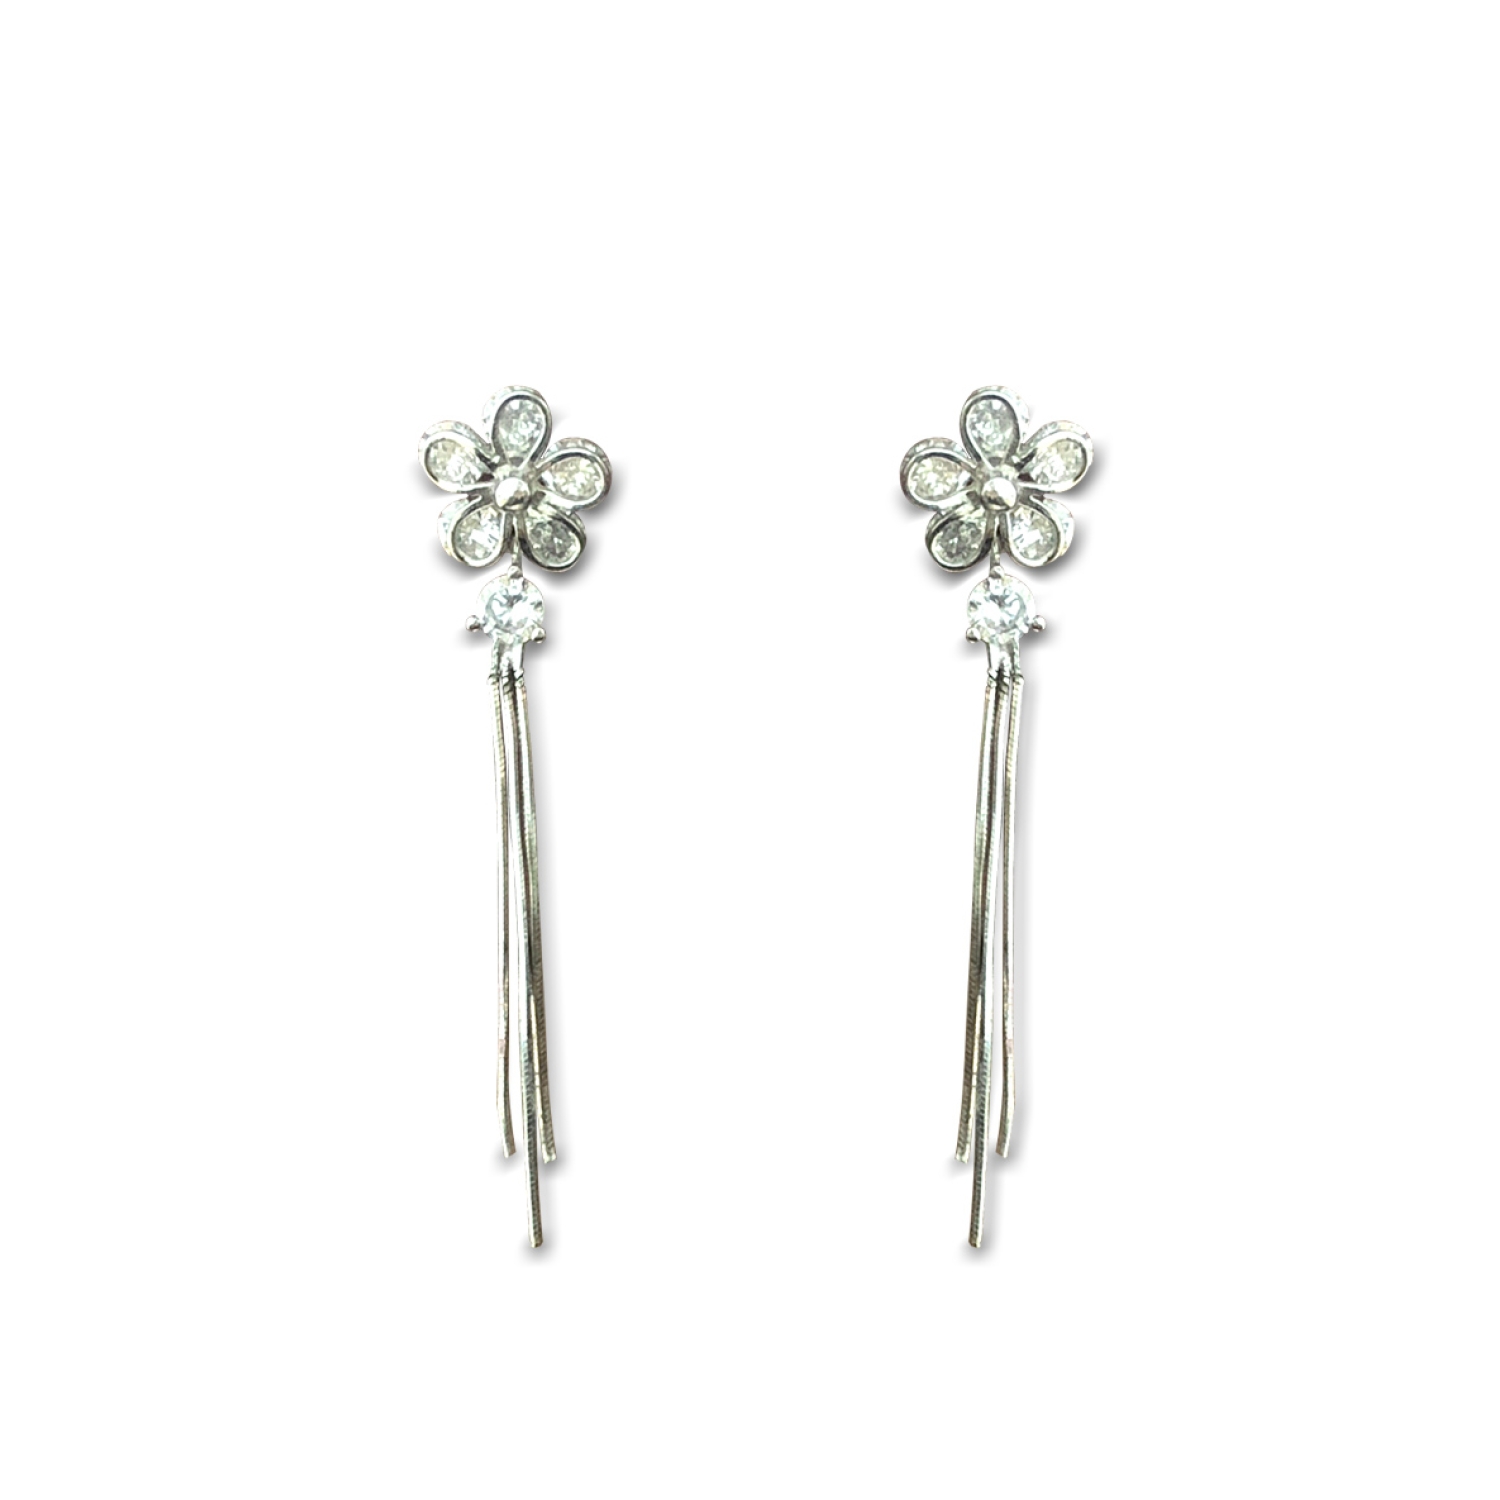 Silgo 925 Sterling Silver earrings for women  Cubic Zirconia Earrings   Dangle earrings for women